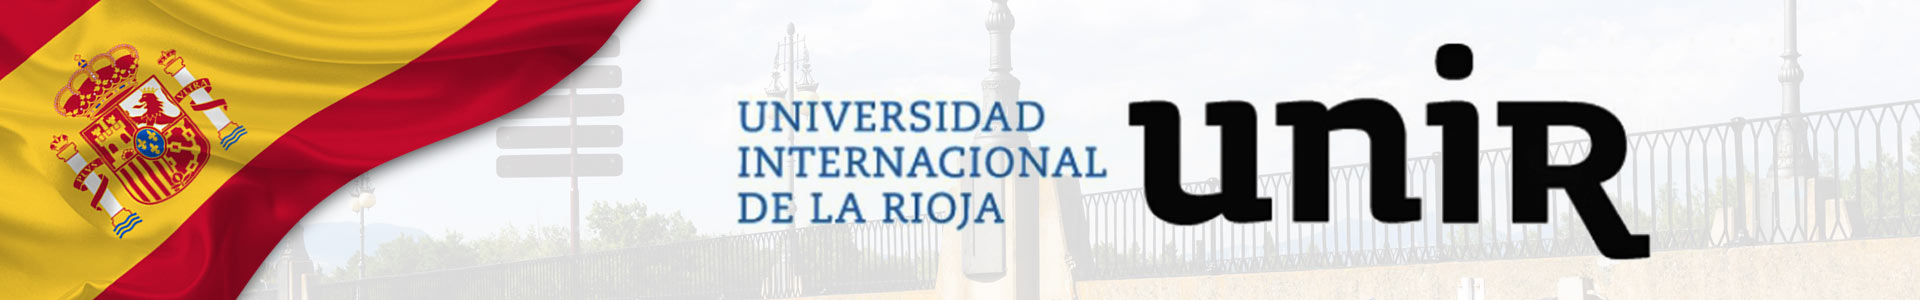 Bandera de España con logo de la Universidad Internacional de la Rioja 